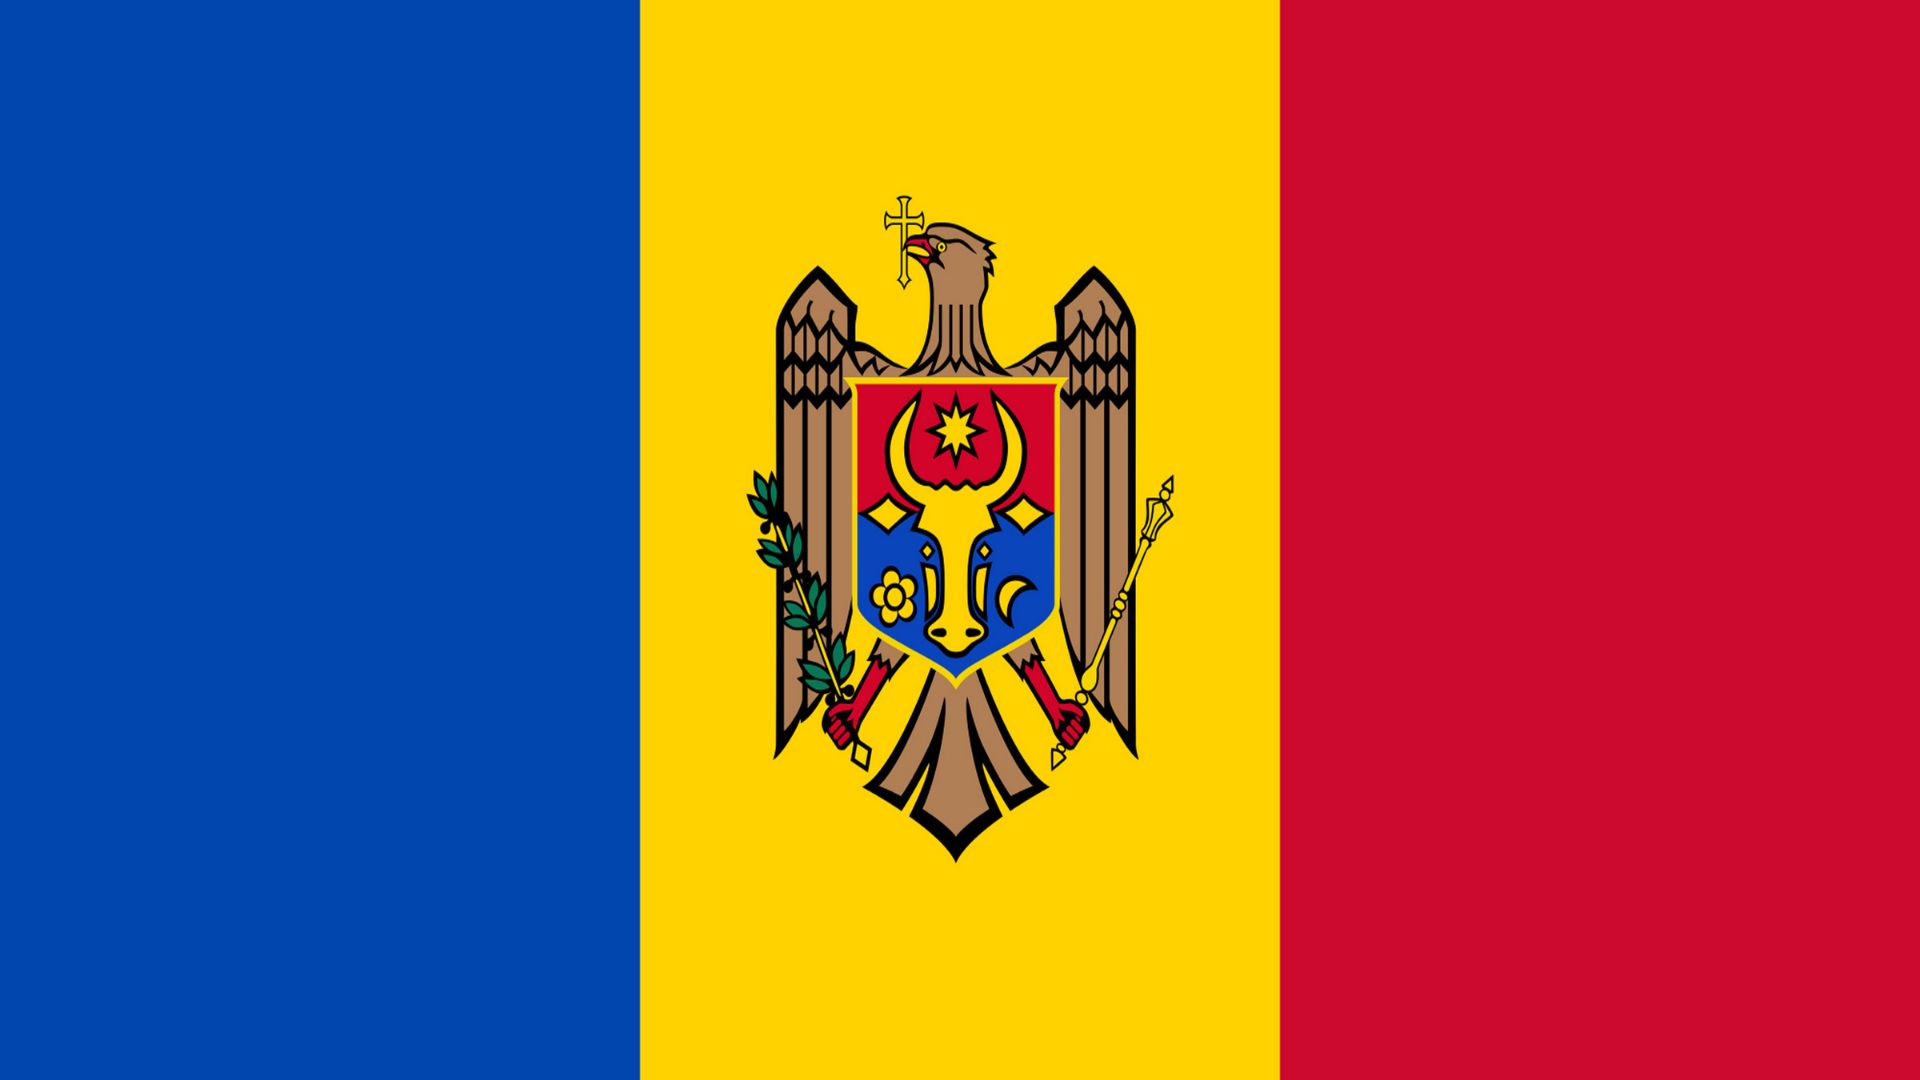 A bandeira da Moldávia possui três cores, que são o azul (que significa o mar), o amarelo (que significa o trigo e a cevada) e o vermelho (que significa o sangue derramado nas invasões). No centro, inclui o seu brasão de armas (uma águia que suporta um escudo com a imagem de uma cabeça de boi) para a distinguir da bandeira da Roménia.